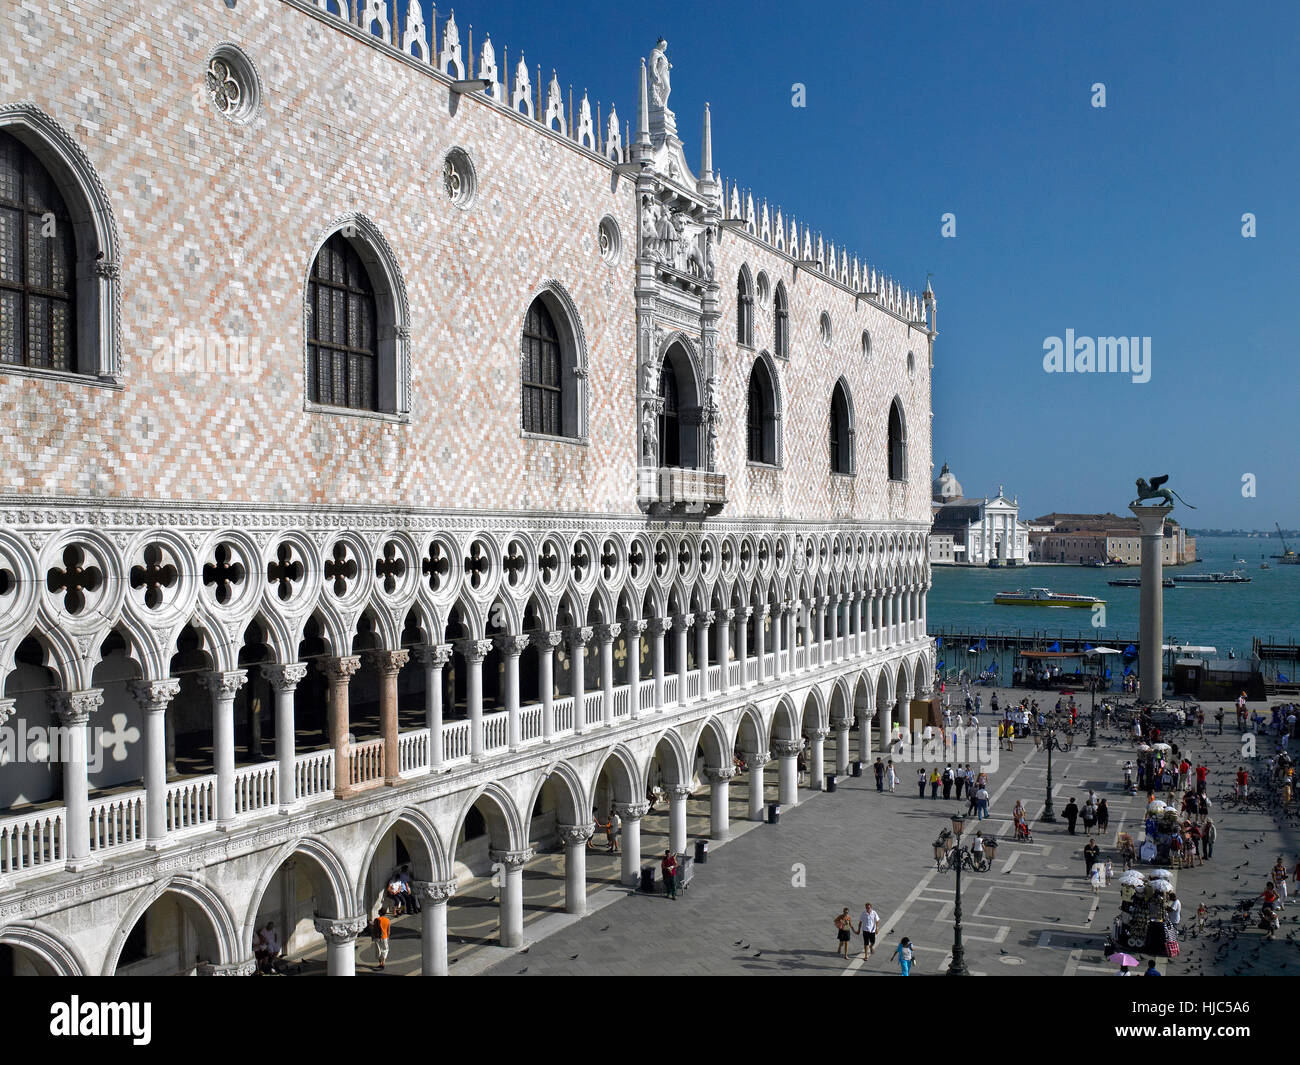 Il Palazzo Ducale in piazza San Marco (Piazzetta San Marco a Venezia, Italia. Il palazzo, costruito in stile gotico veneziano, e uno dei principali punti di riferimento Foto Stock